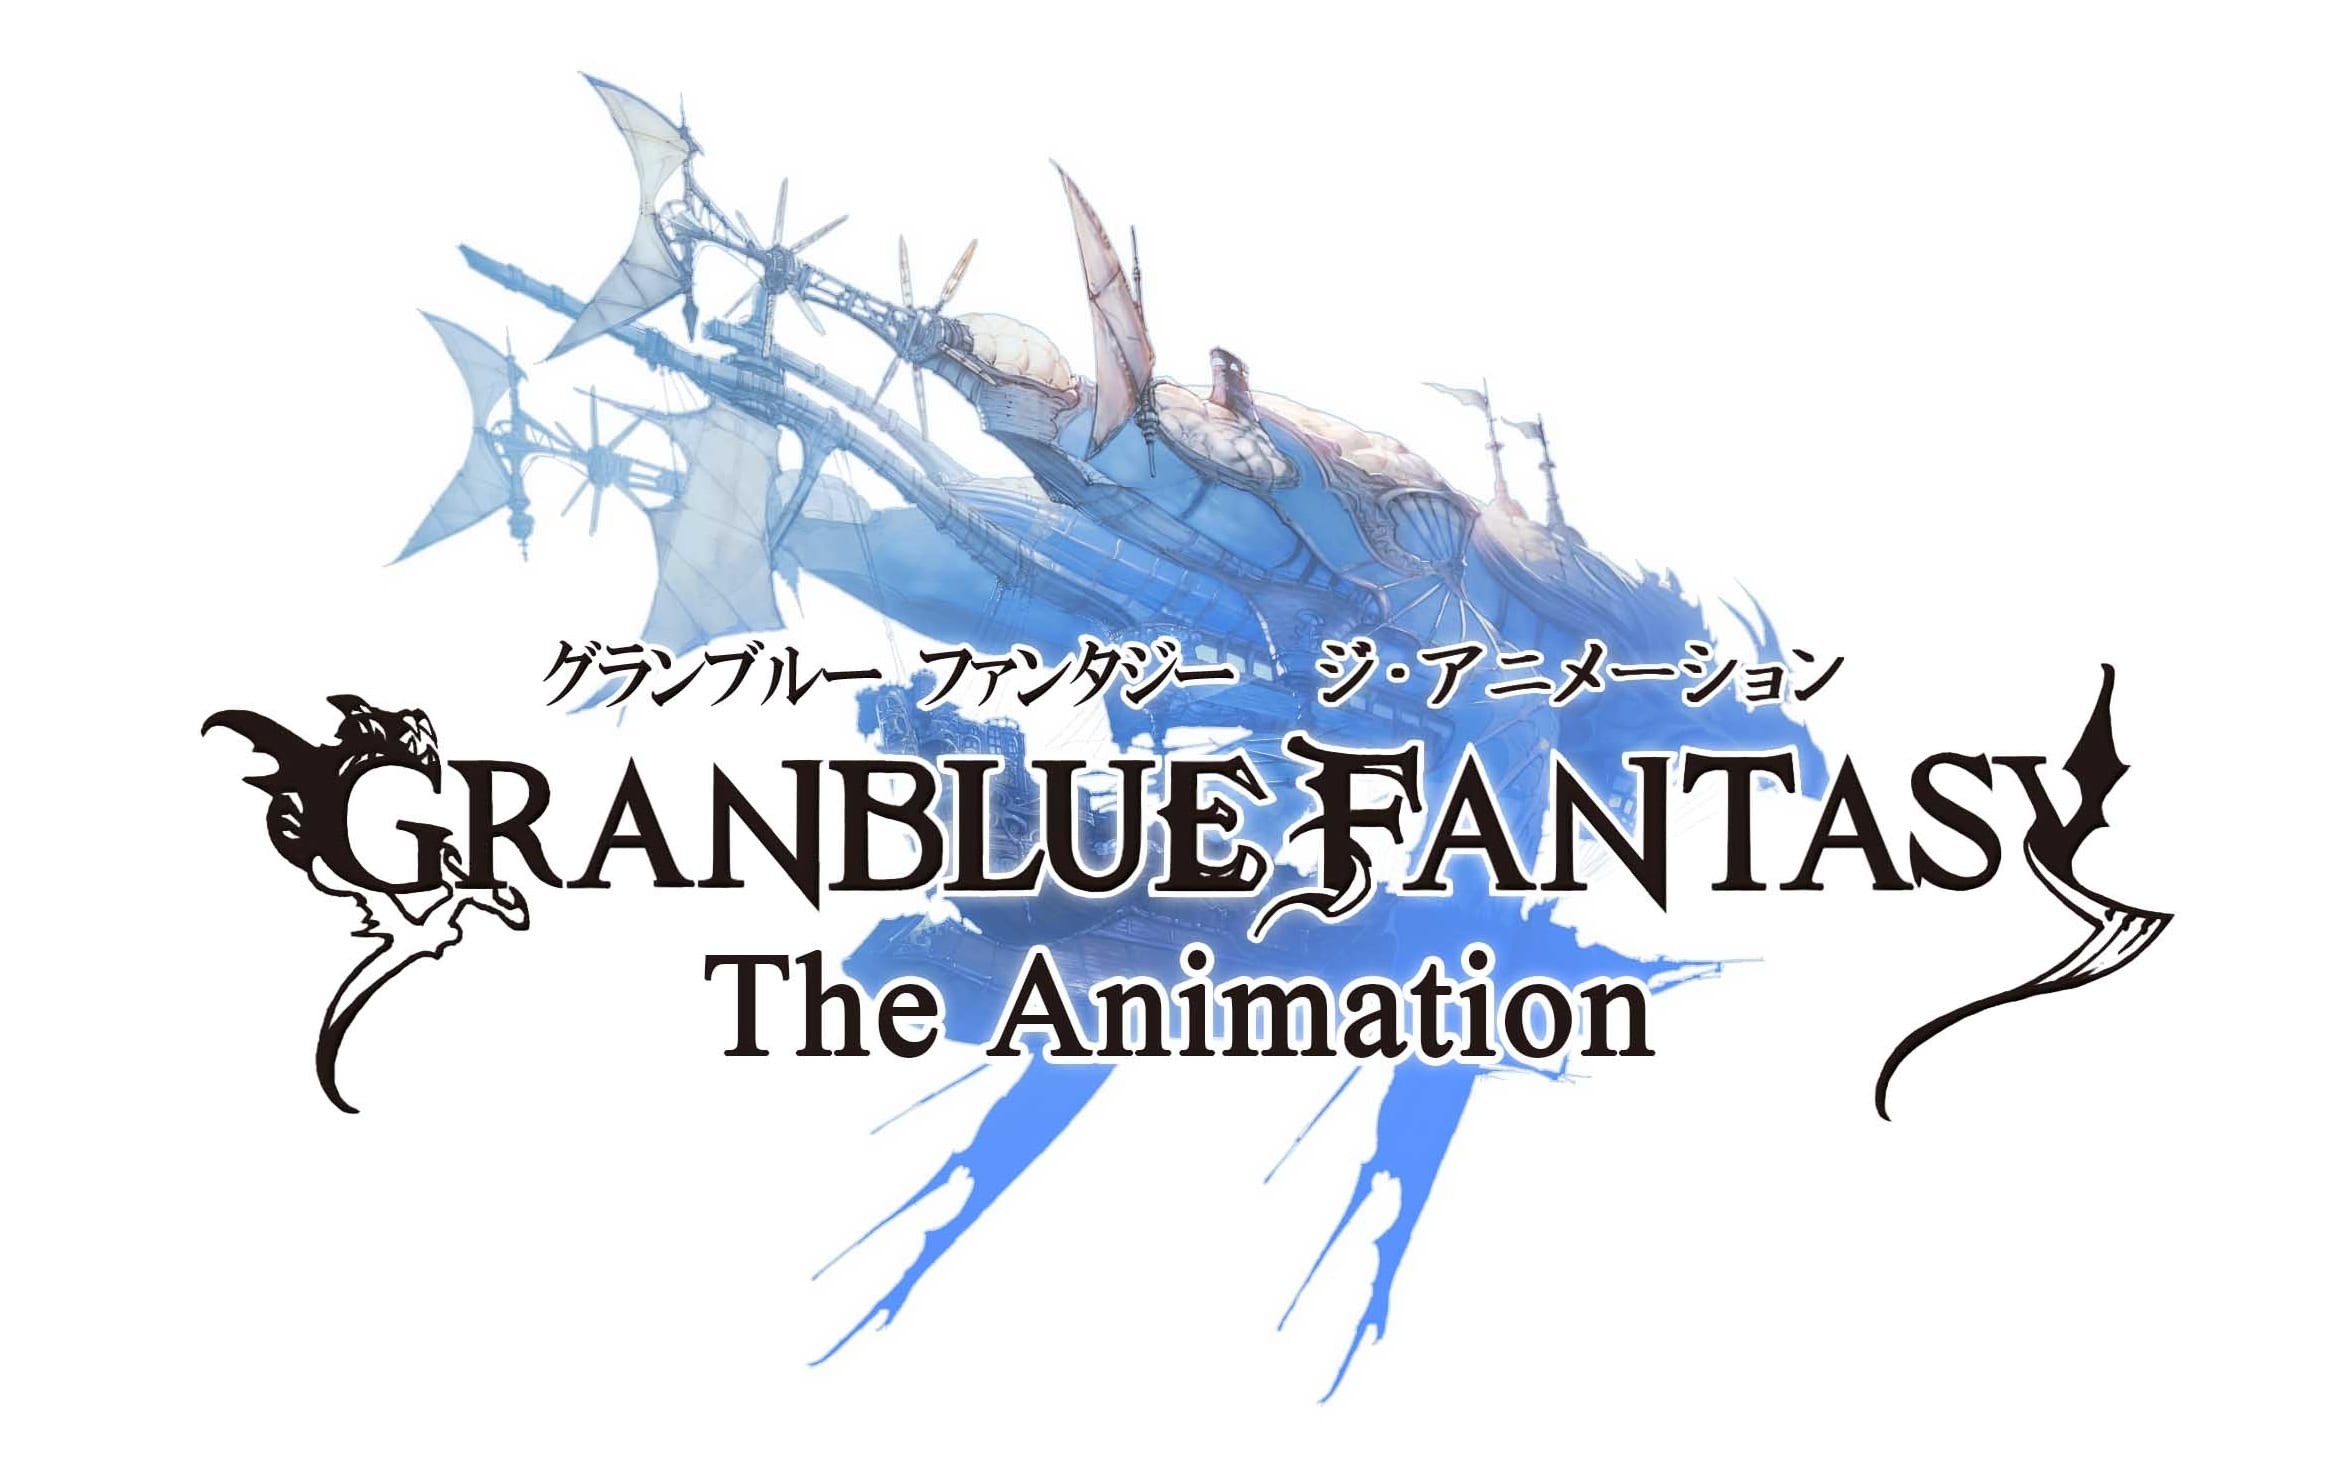 Tv アニメ Granblue Fantasy The Animation Abematv での 1 話 11 話一挙放送が決定 超 アニメディア